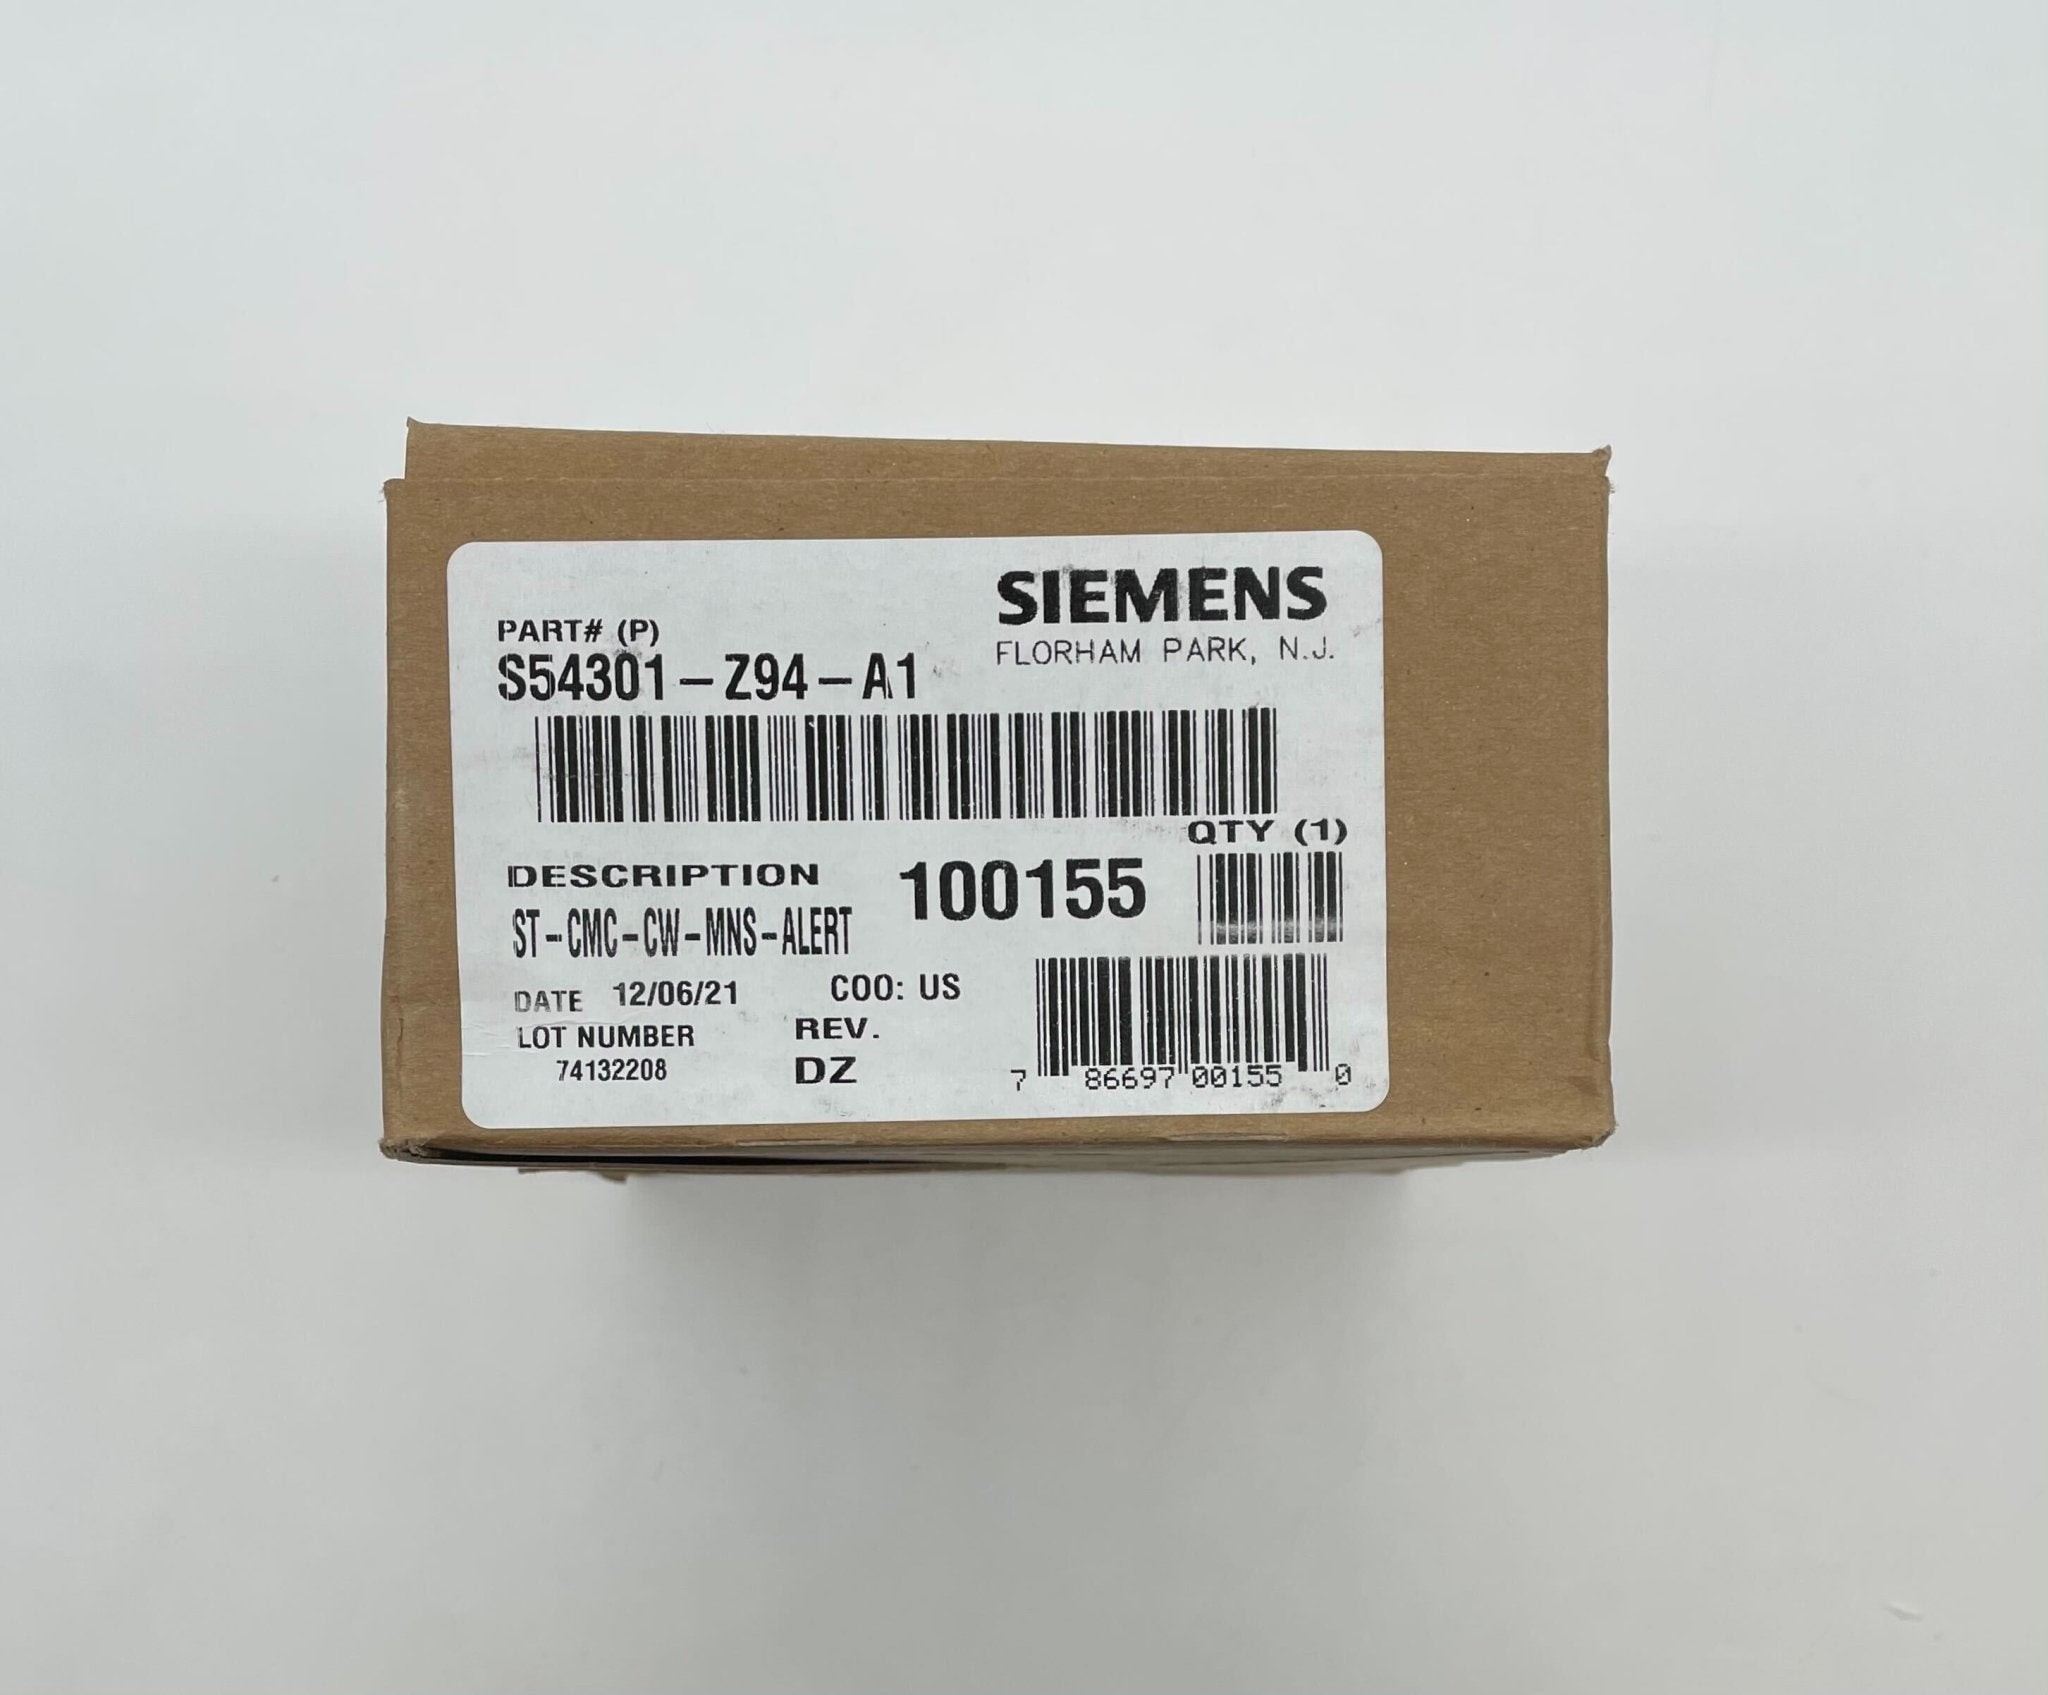 Siemens ST-CMC-CW-MNS-ALERT - The Fire Alarm Supplier